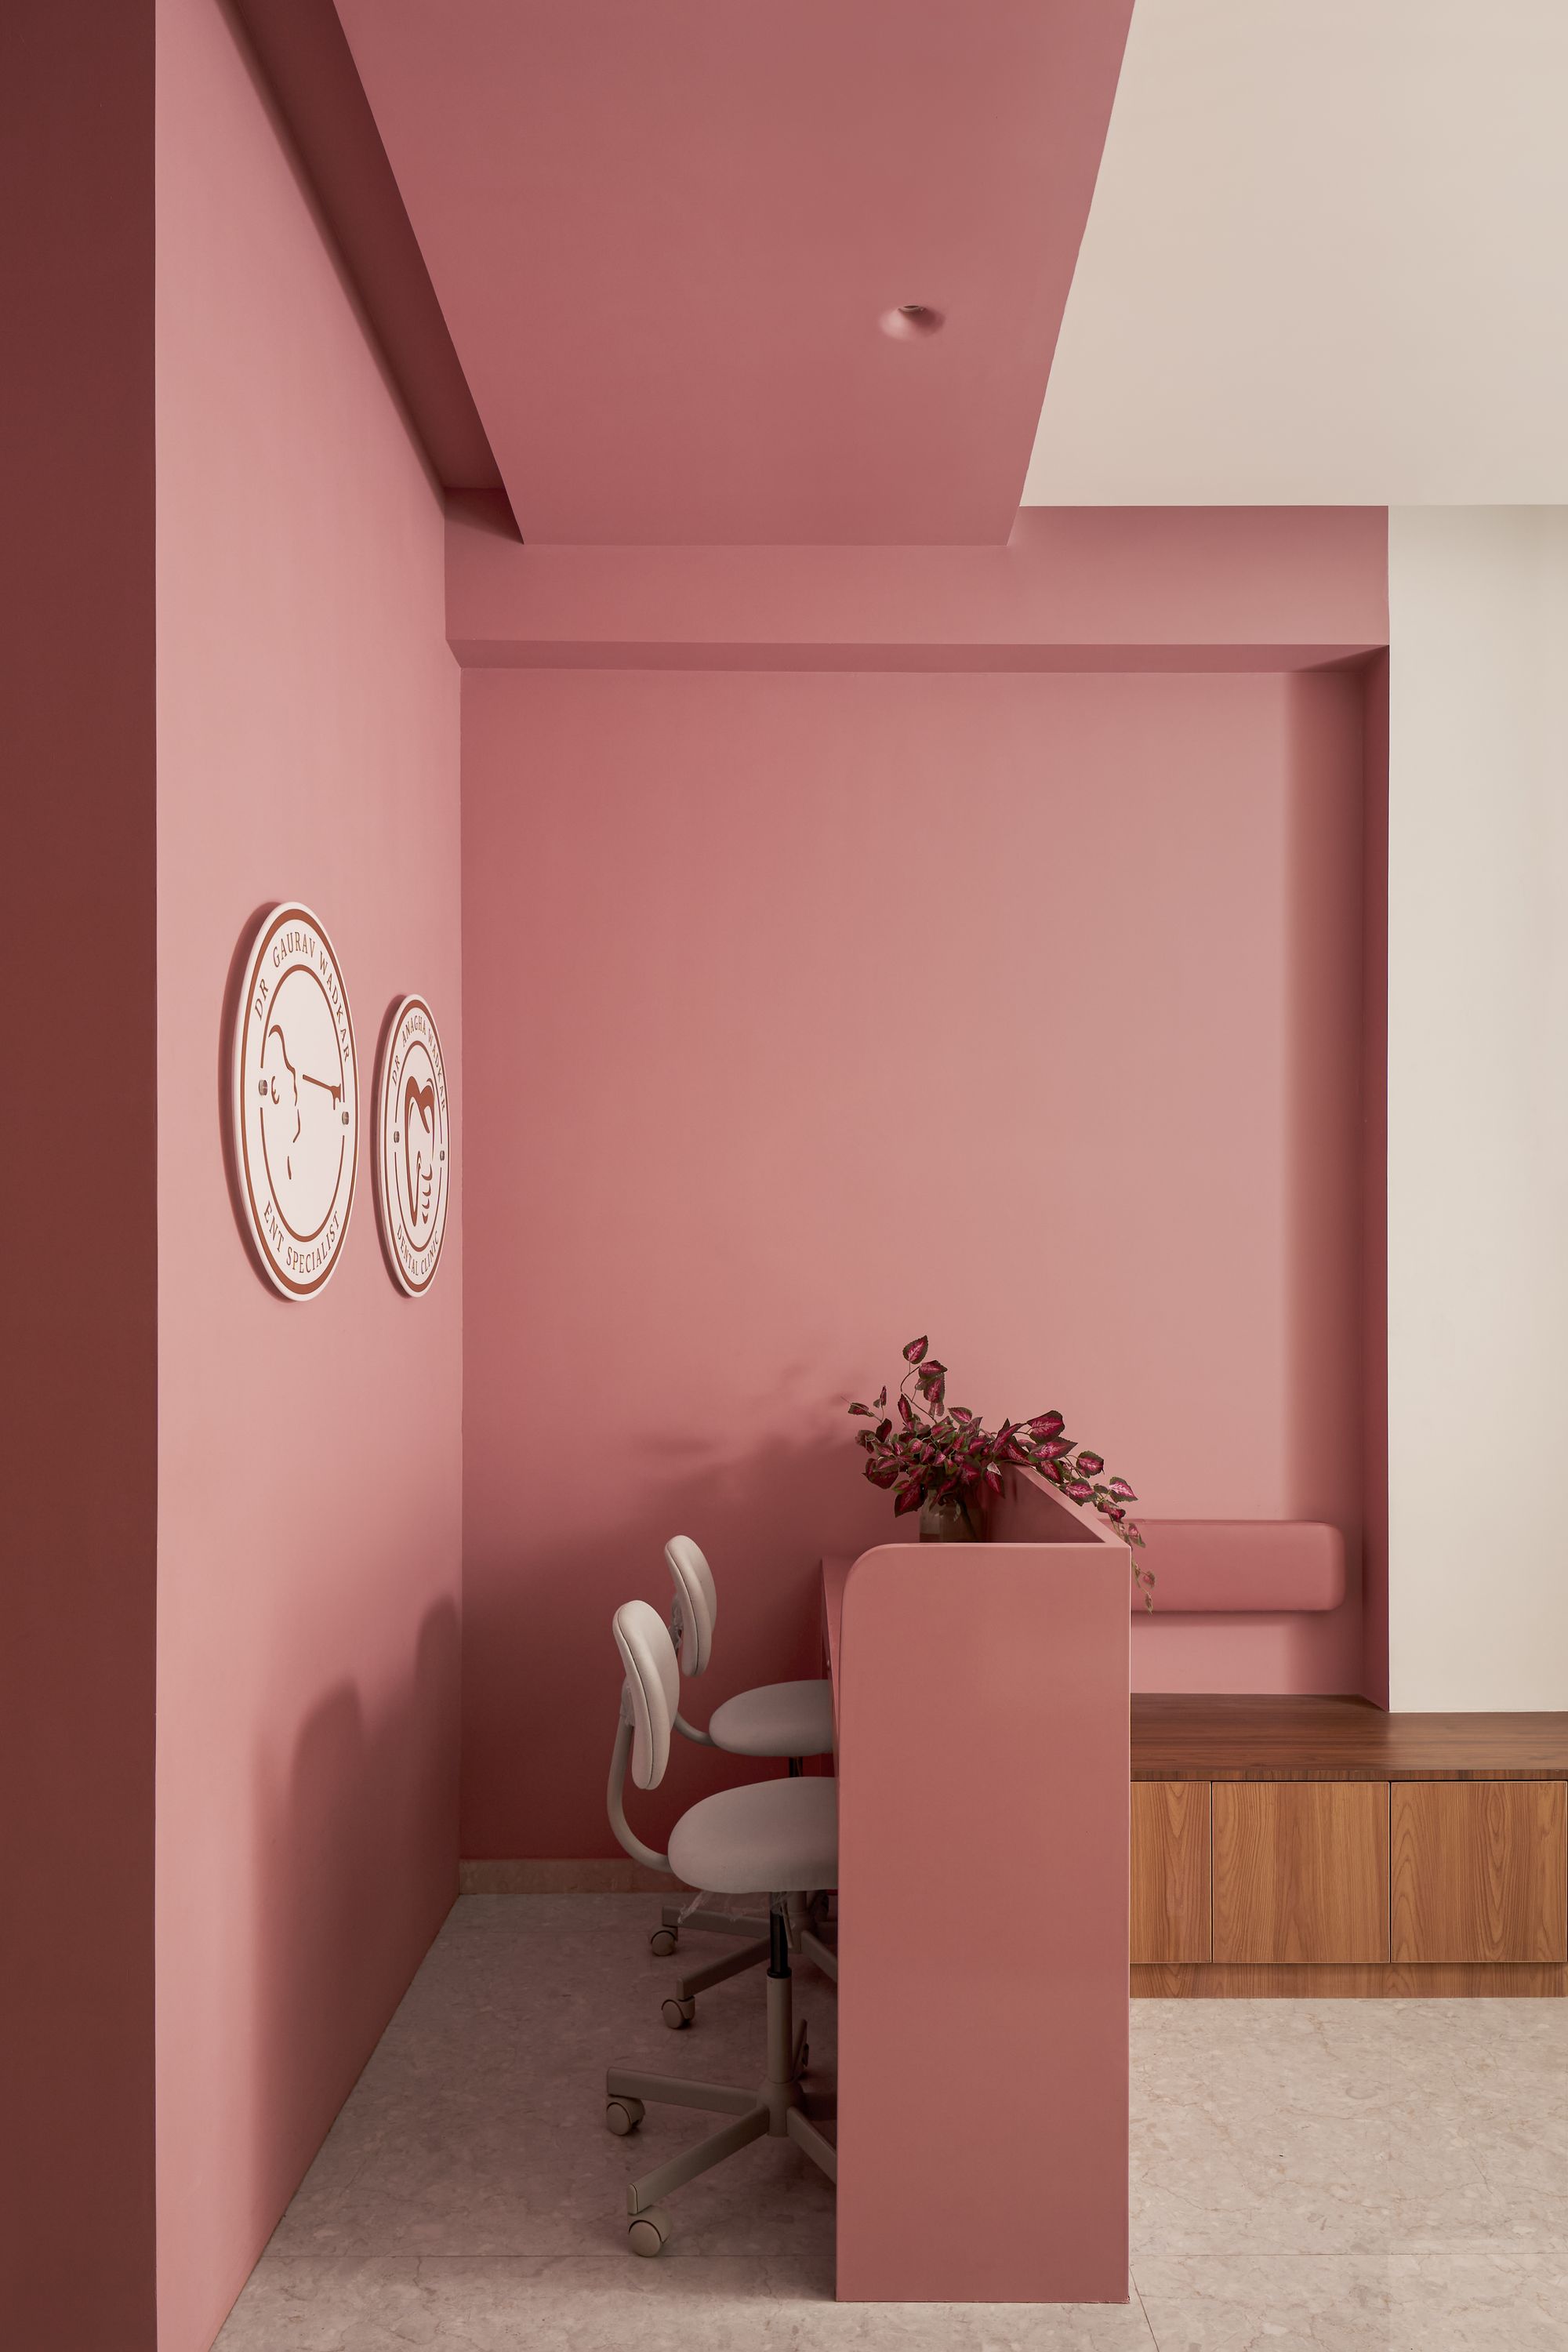 图片[2]|四间客房-耳鼻喉科和牙医诊所|ART-Arrakis | 建筑室内设计的创新与灵感